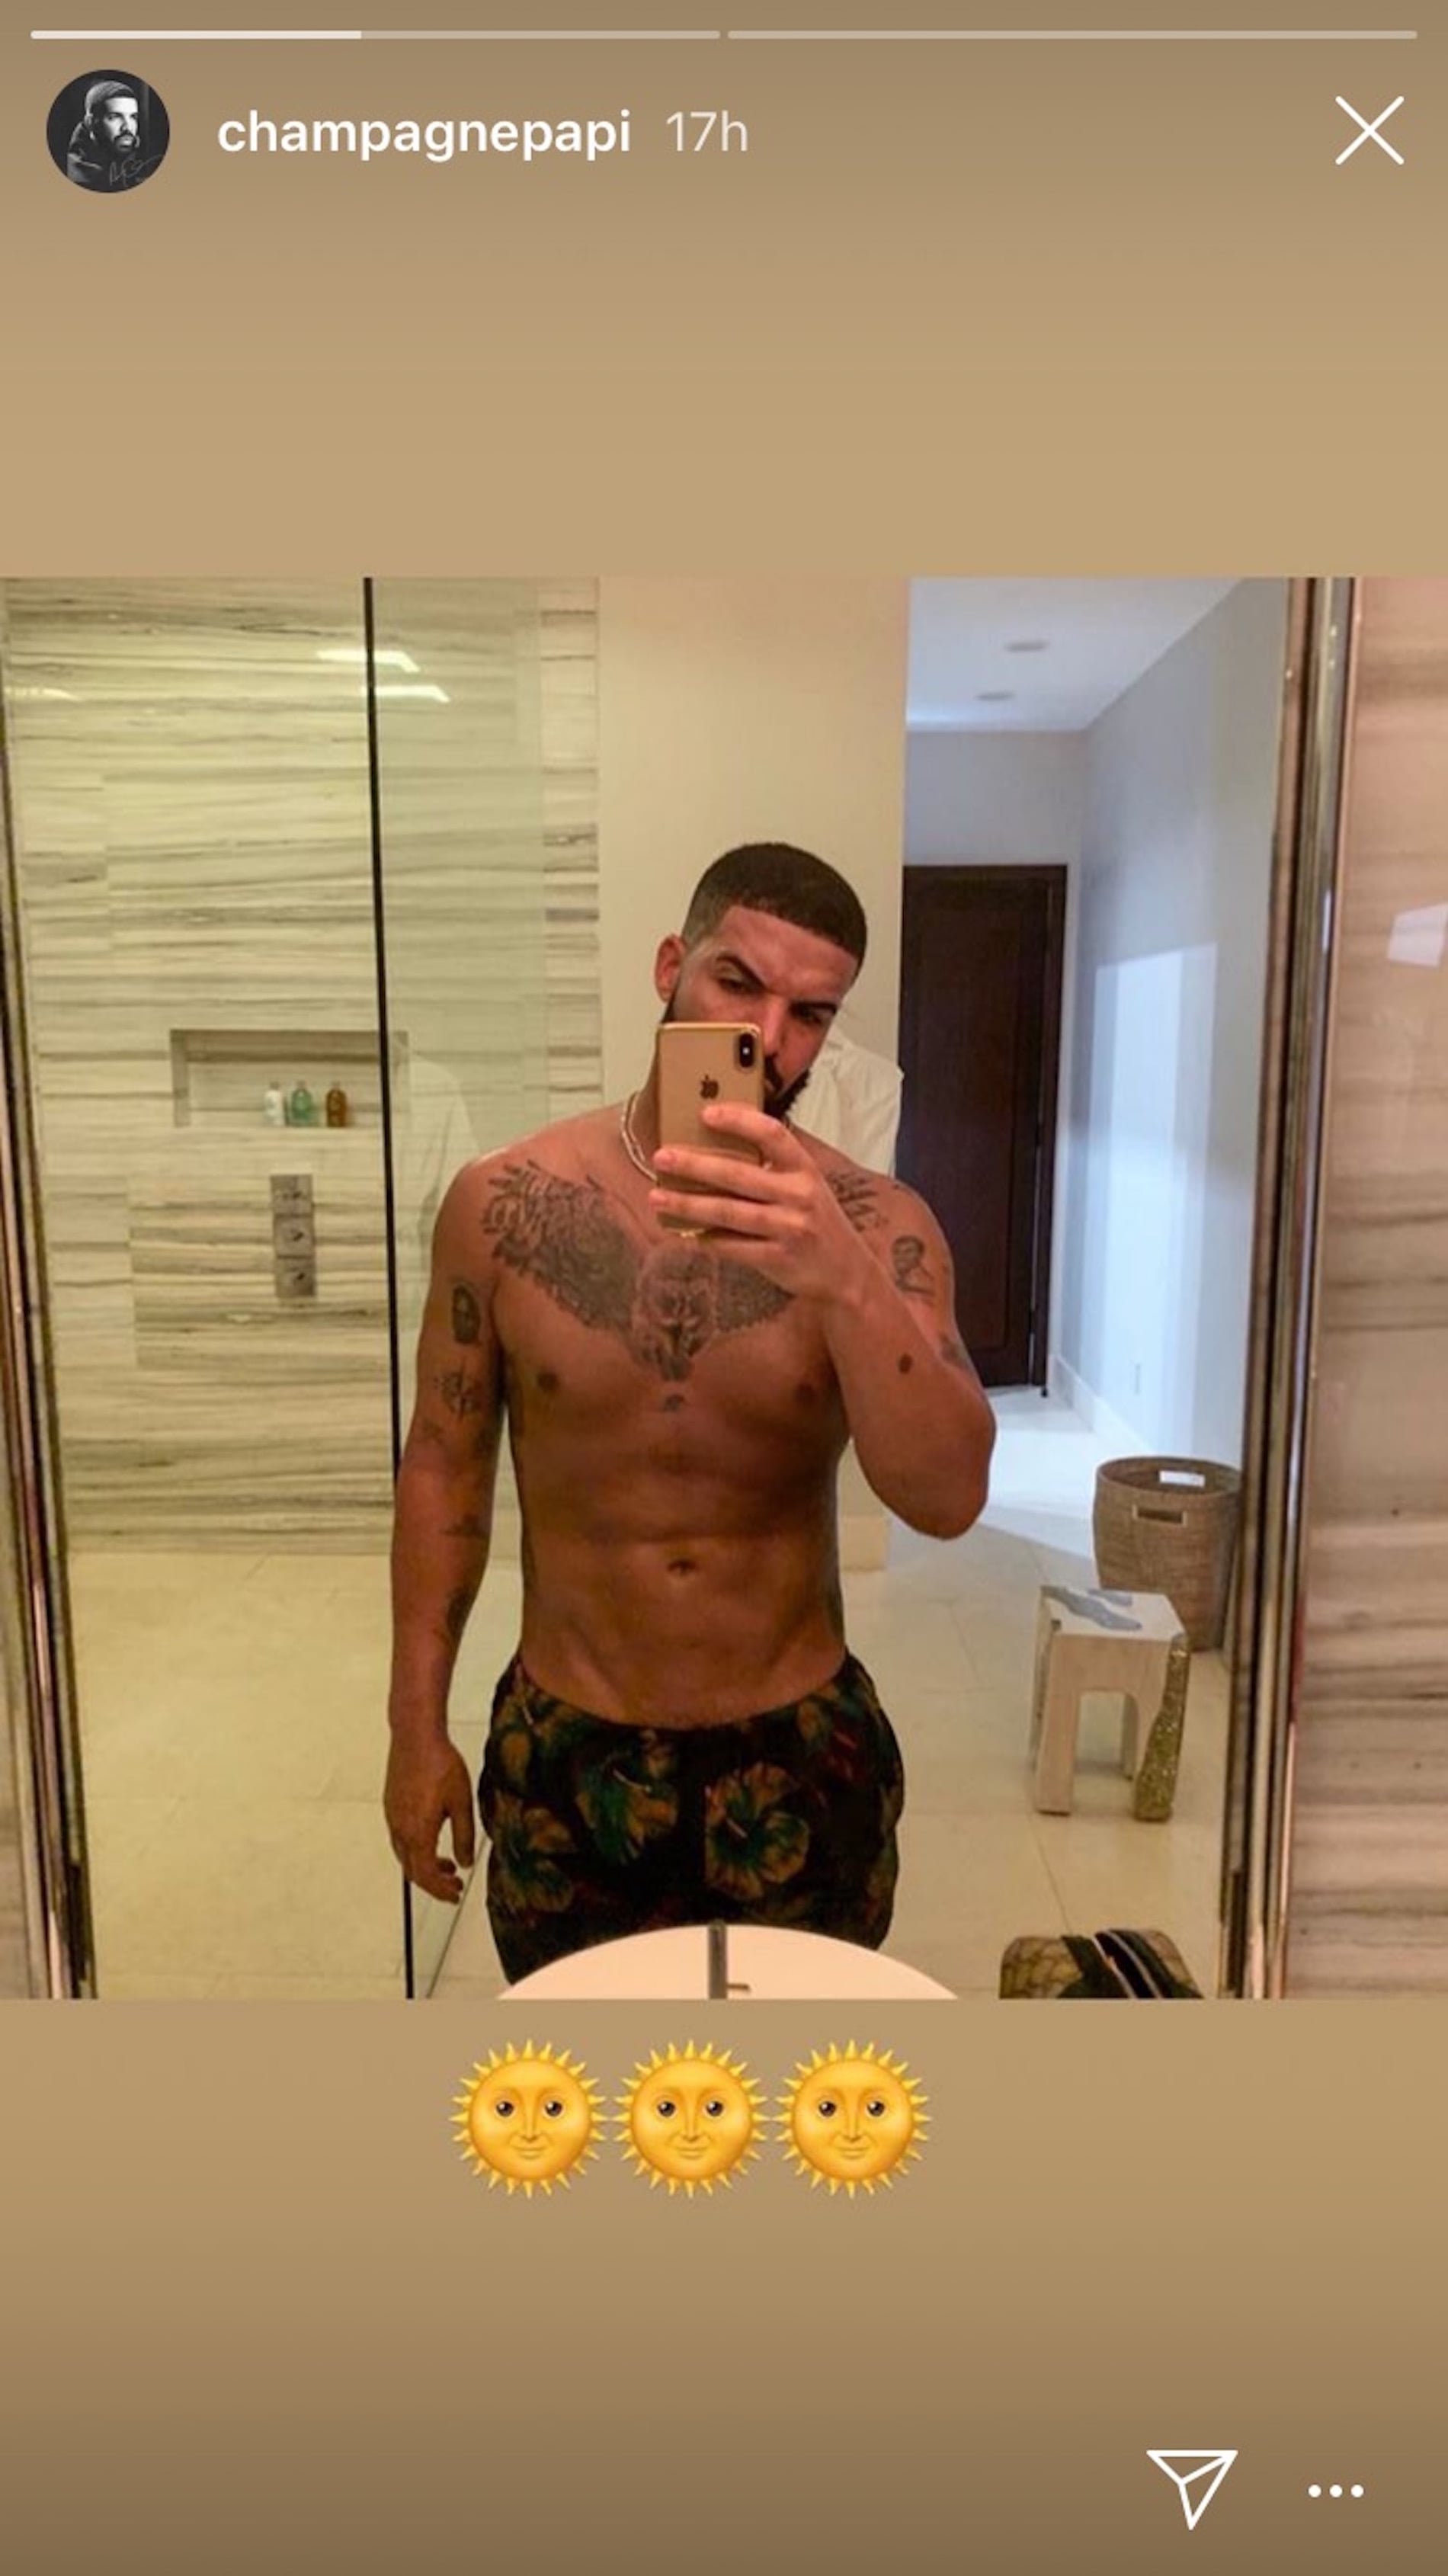 Drake Shirtless Photo on Instagram December 2018 ... - 1900 x 3380 jpeg 294kB